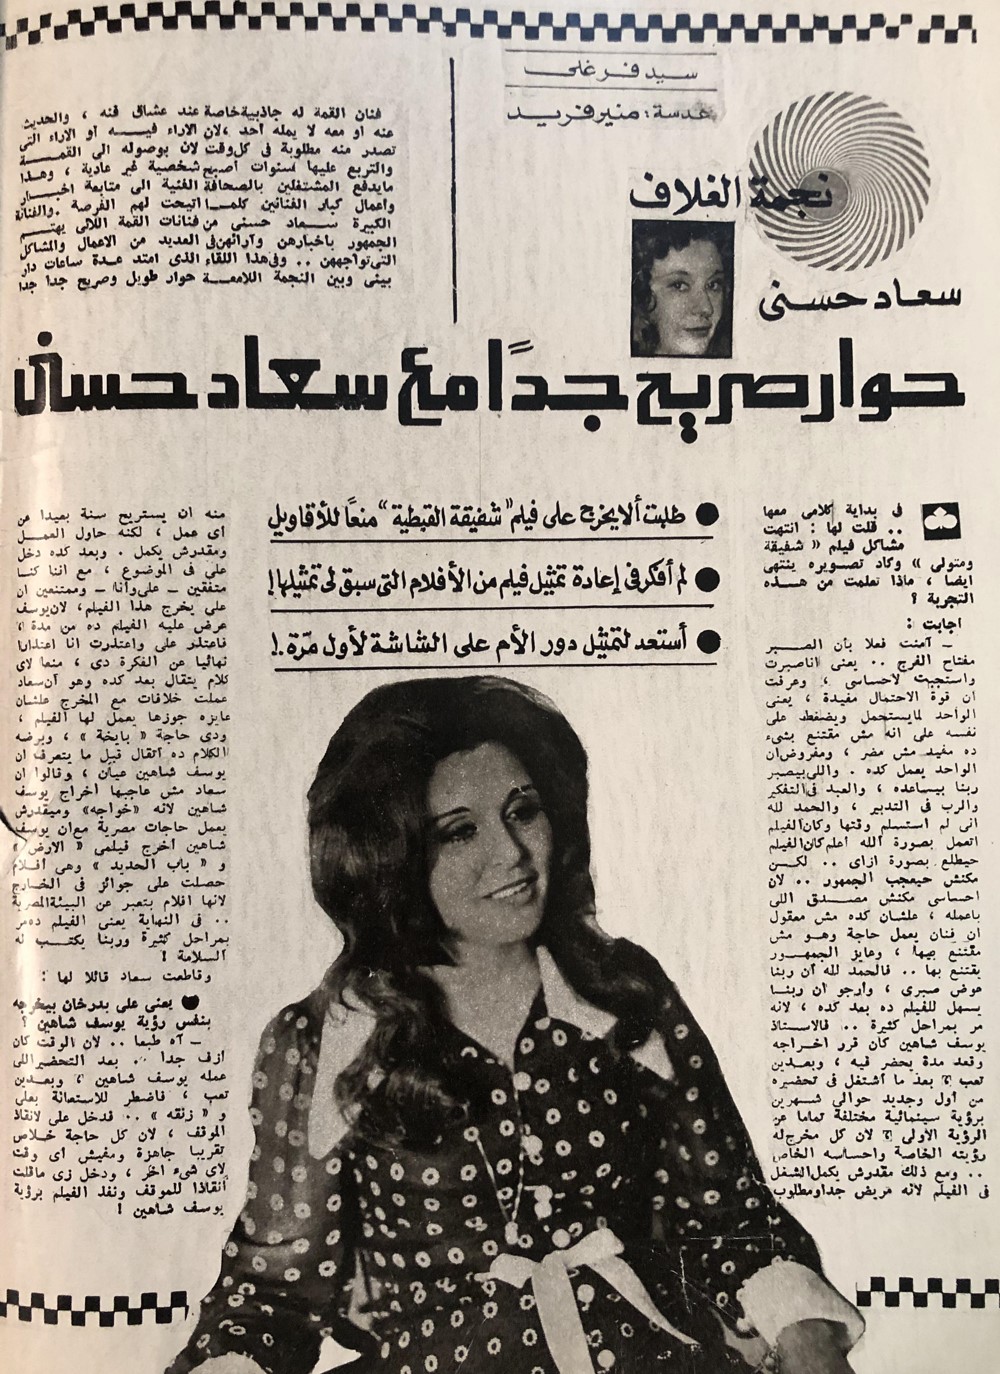 1977 - حوار صحفي : حوار صريح جداً مع سعاد حسني 1977 م 162